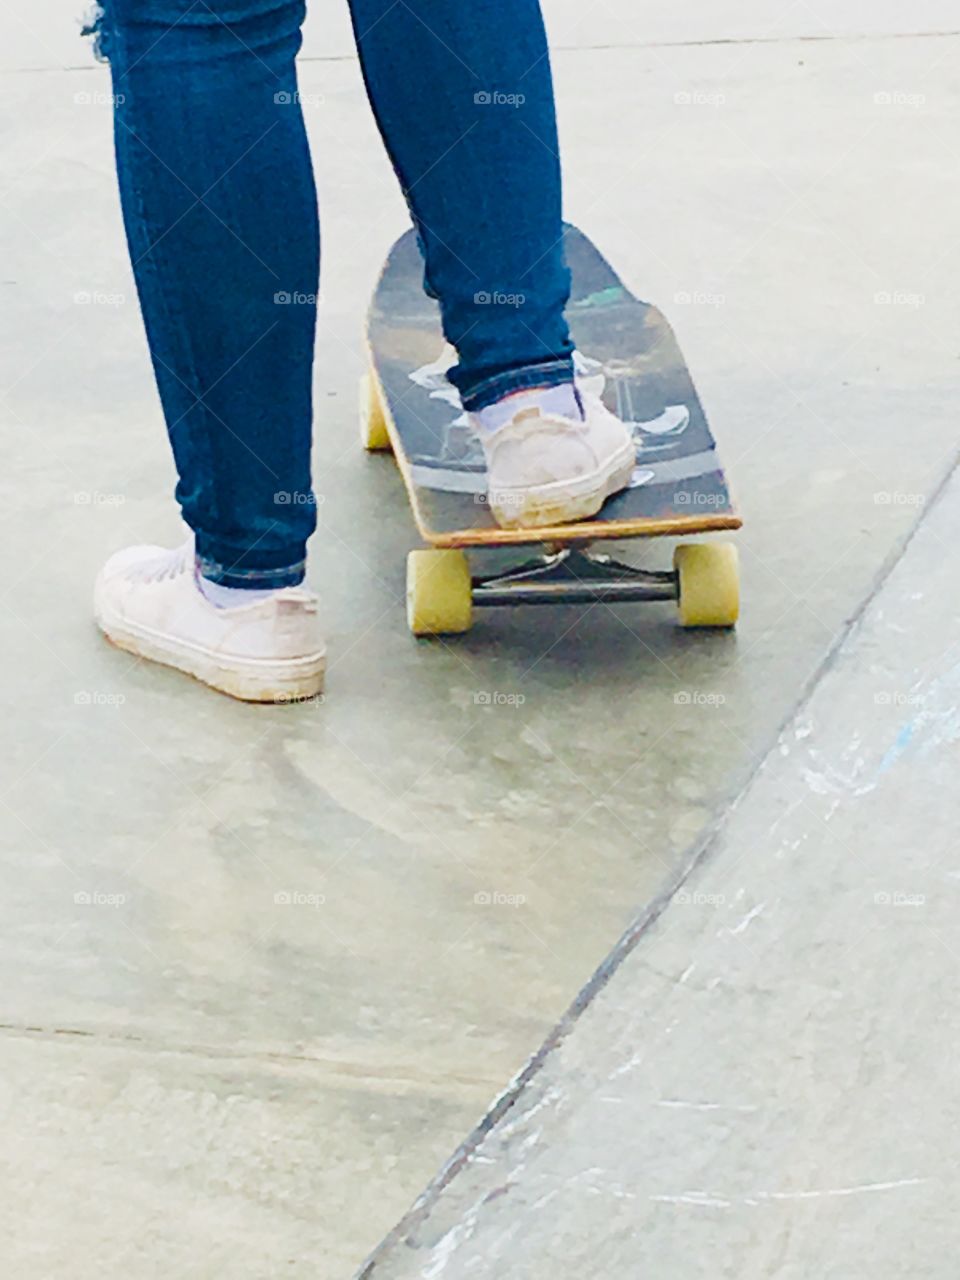 Skateboarding fashion 